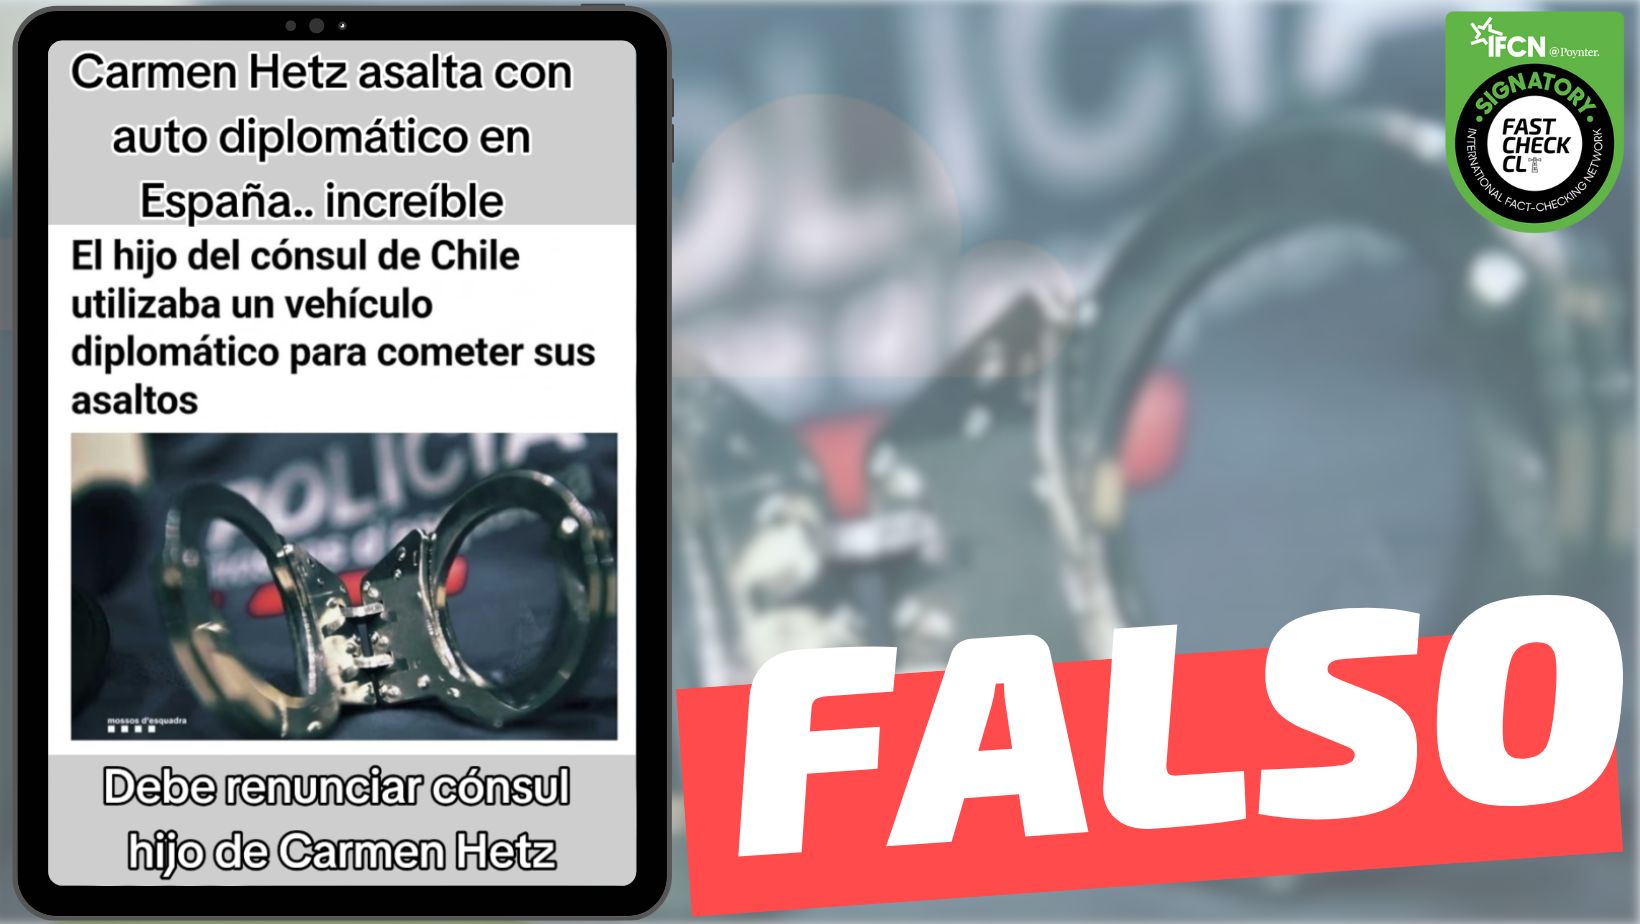 You are currently viewing “Nieto de Carmen Hertz asalta con auto diplomático en España”: #Falso